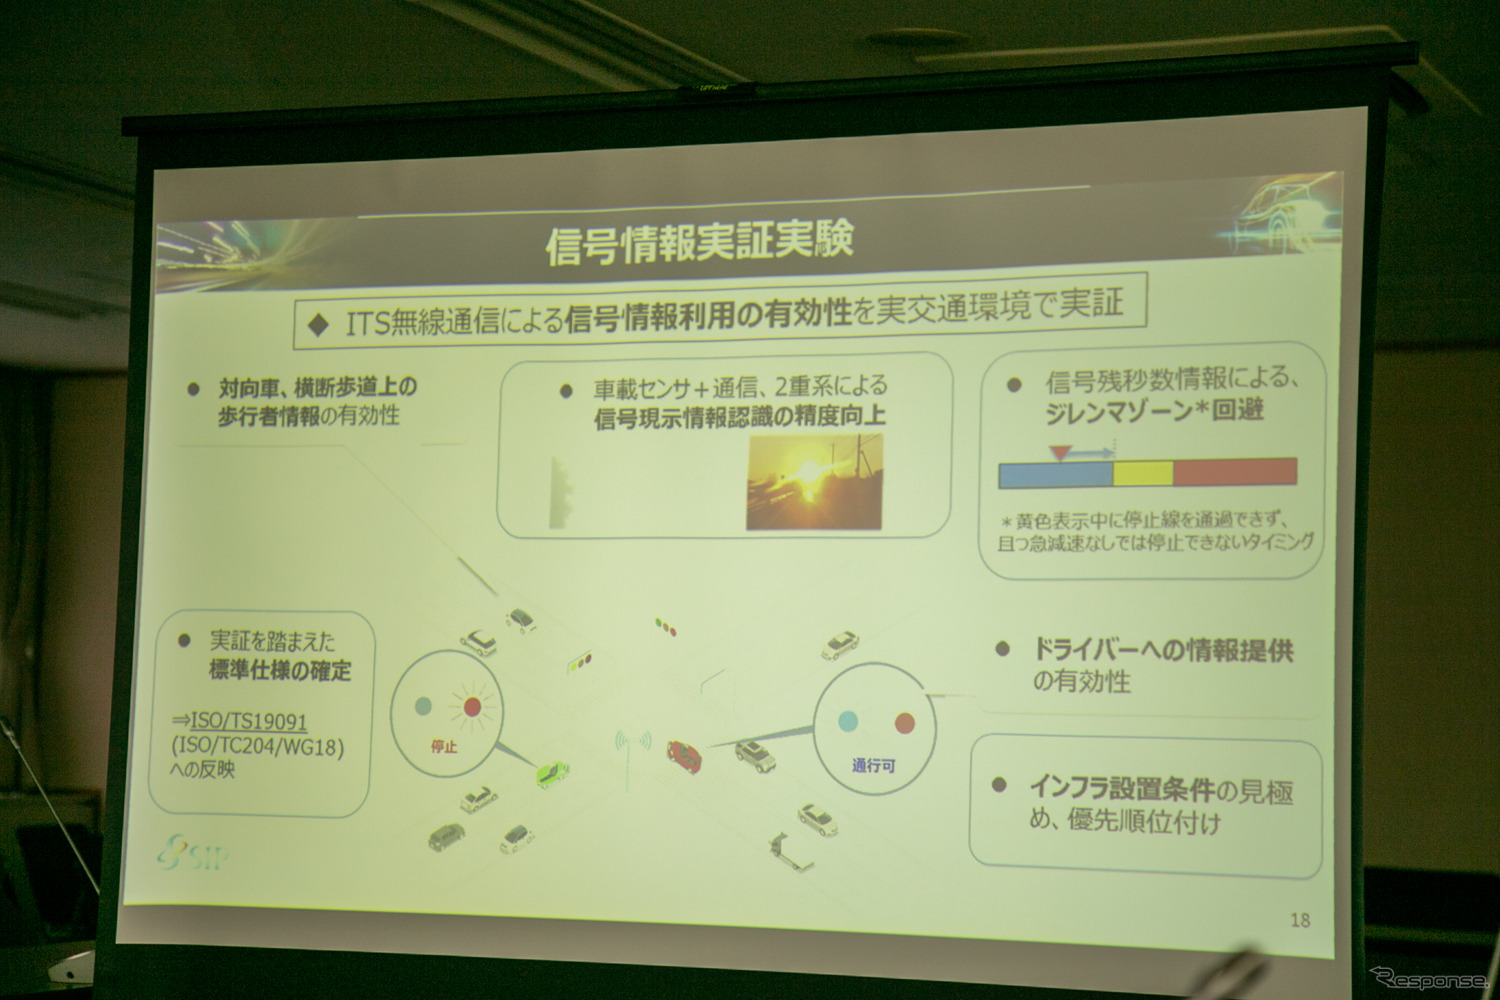 臨海都心や羽田空港周辺で自動運転の実証実験---内閣府SIP第2期　10月より